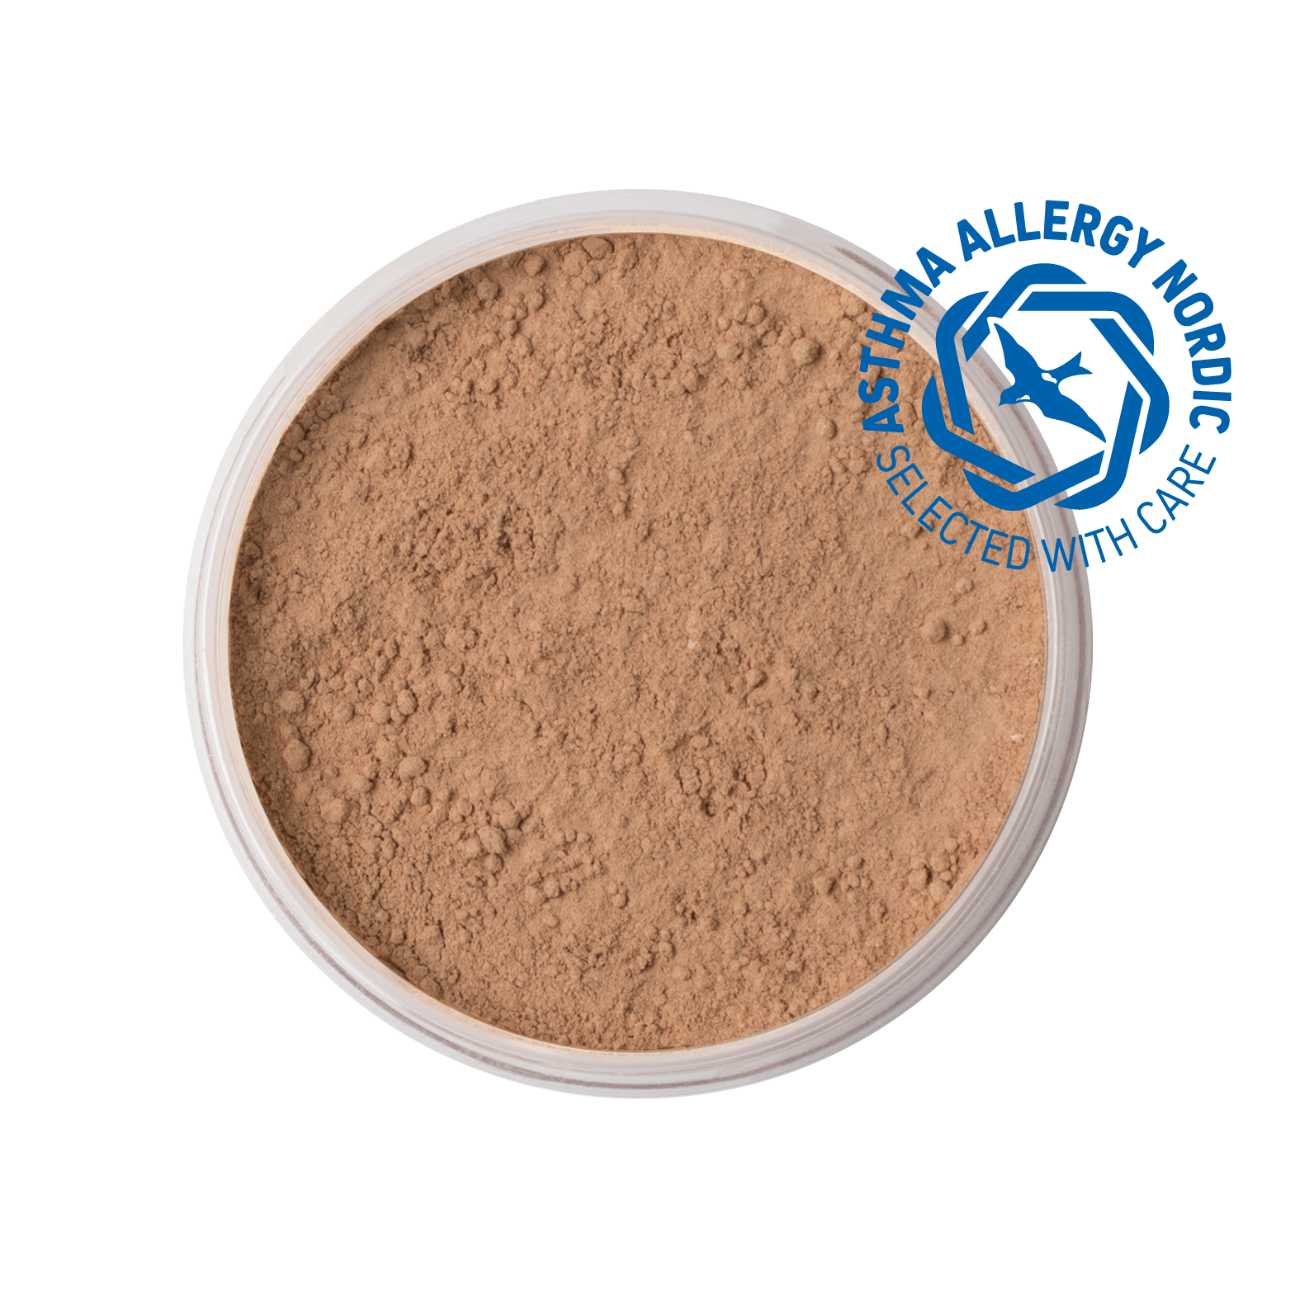 IDUN Minerals Mineral Powder Foundation Siri Neutral Medium 7 g